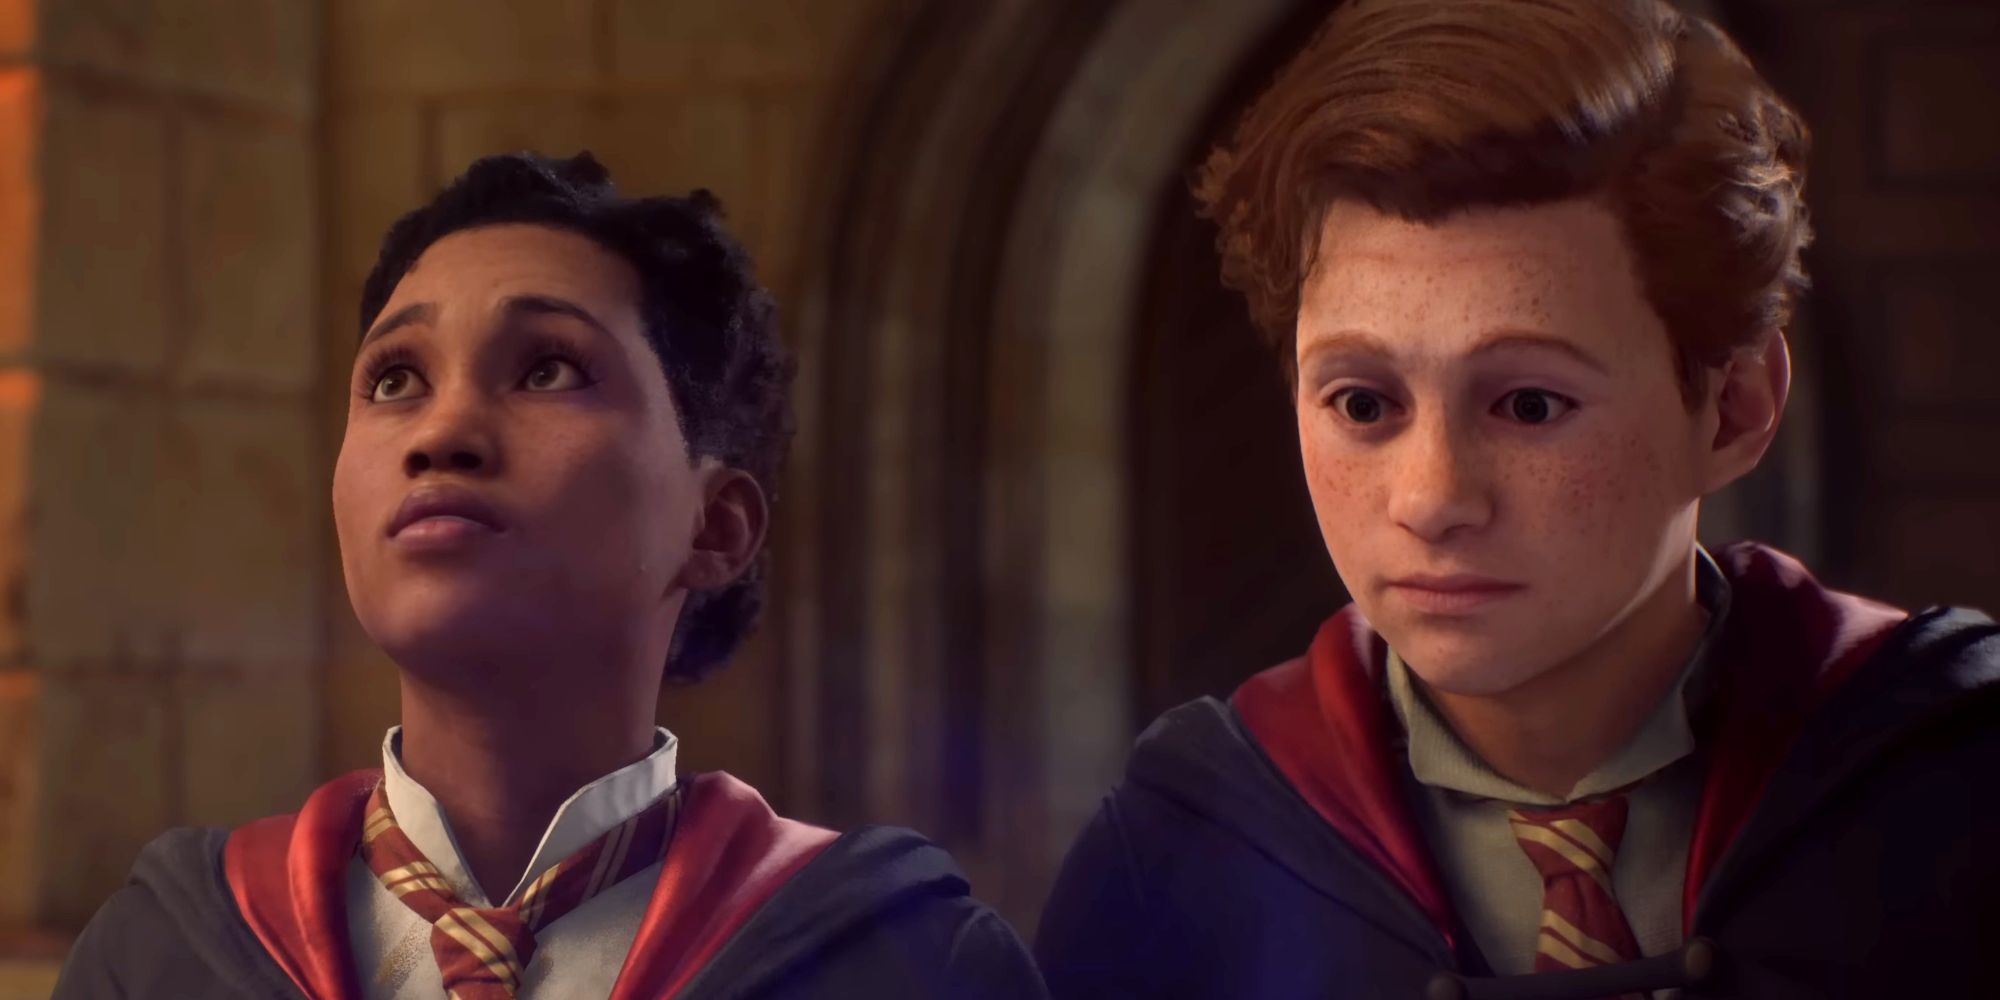 Dois alunos do Legado de Hogwarts no Salão Principal da escola vestindo uniformes da Grifinória.  Um está olhando para a mesa, enquanto o outro olha para uma coruja voando acima.